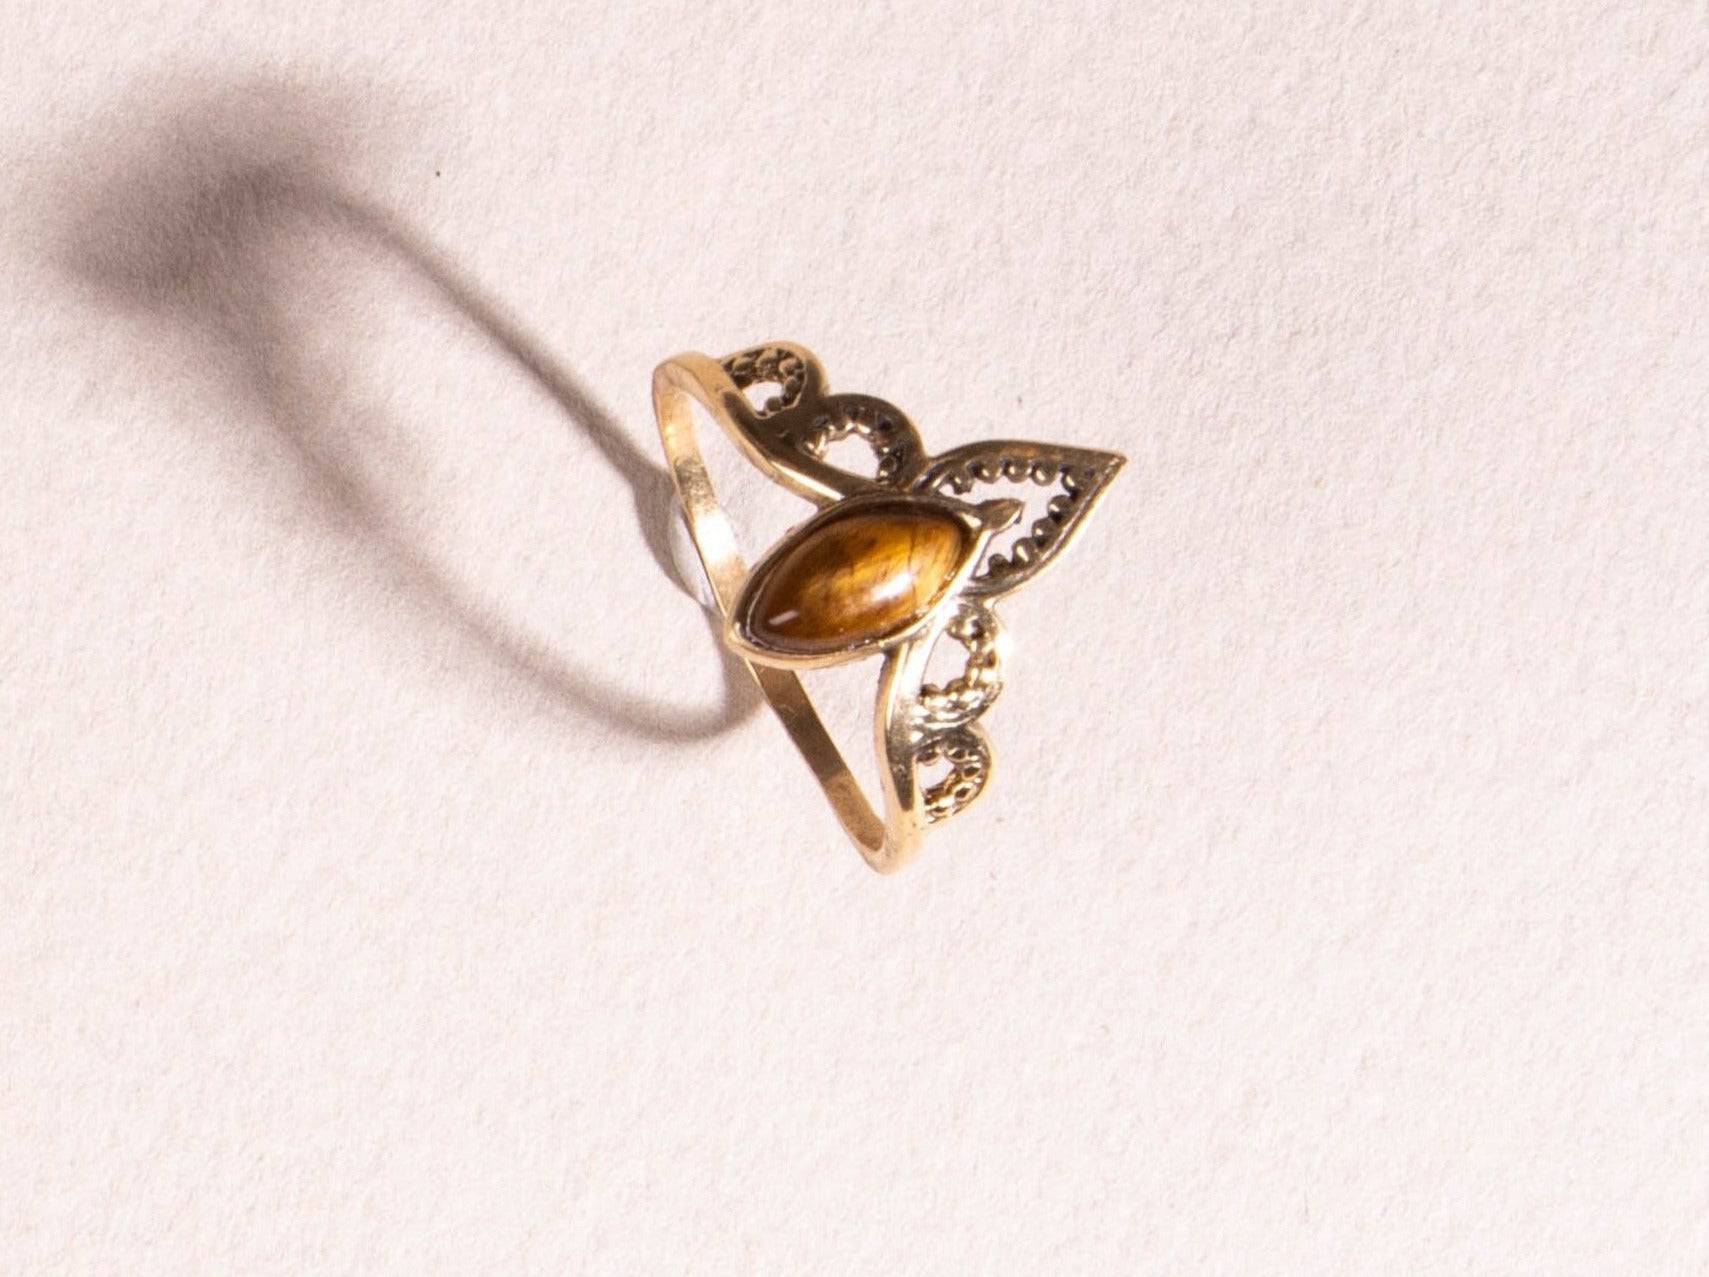 Auge Kronen Ring mit Tigerauge gold handgemacht - NooeBerlin